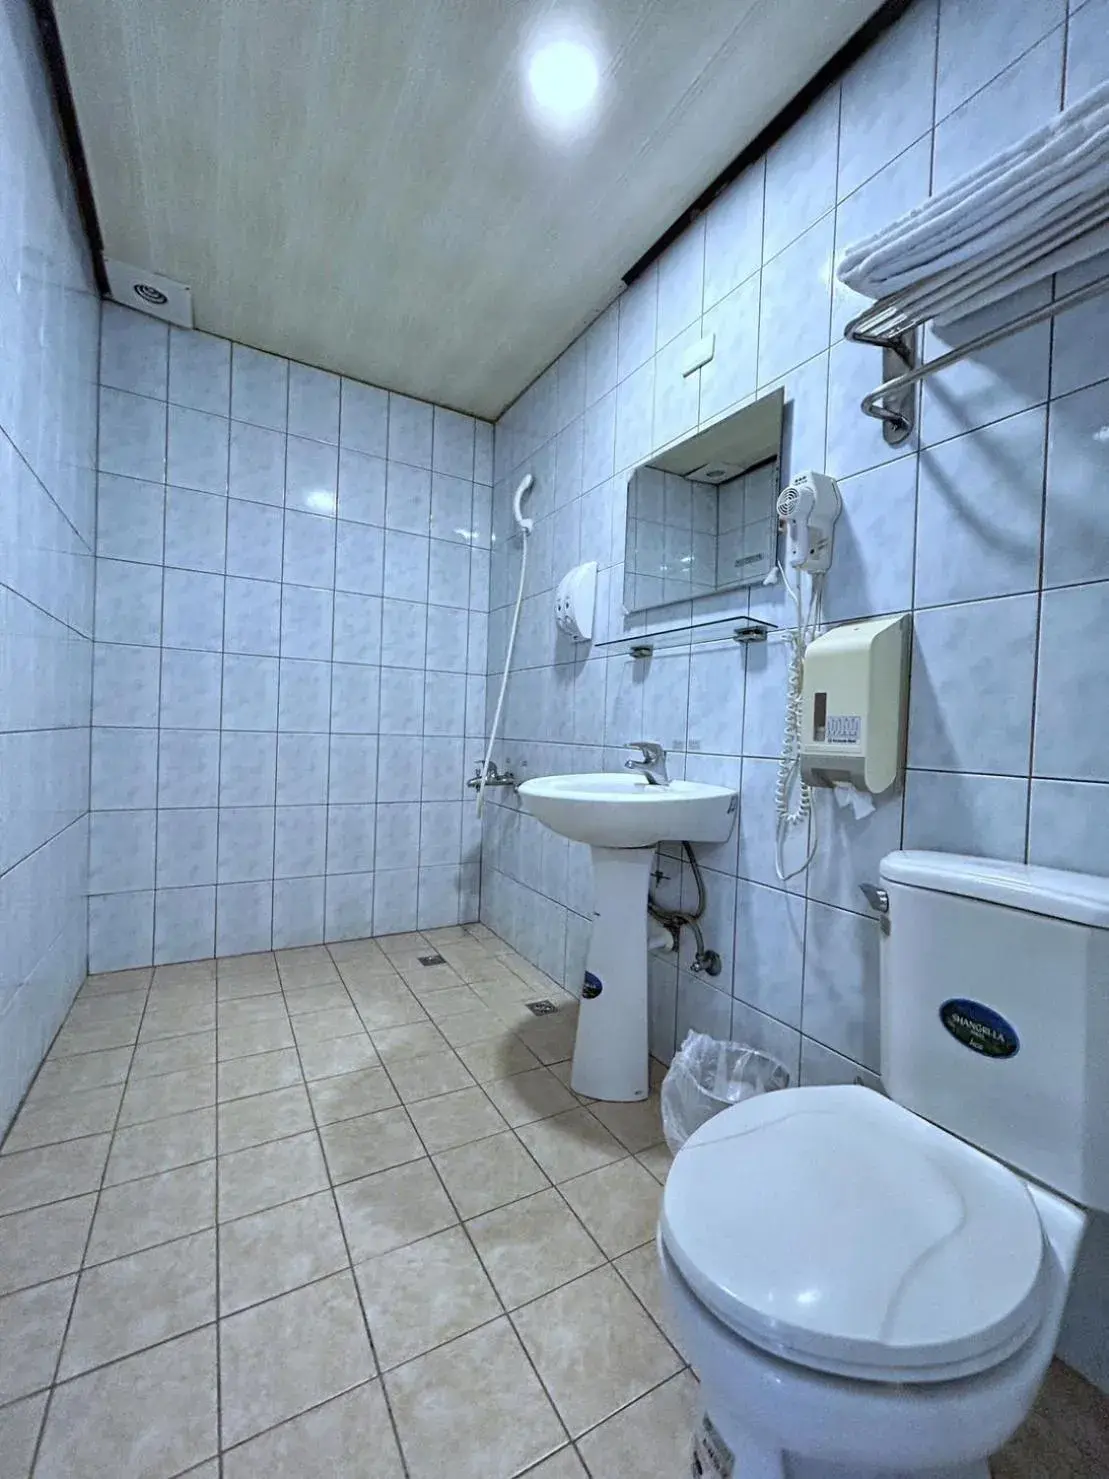 Toilet, Bathroom in Fulong Hotel